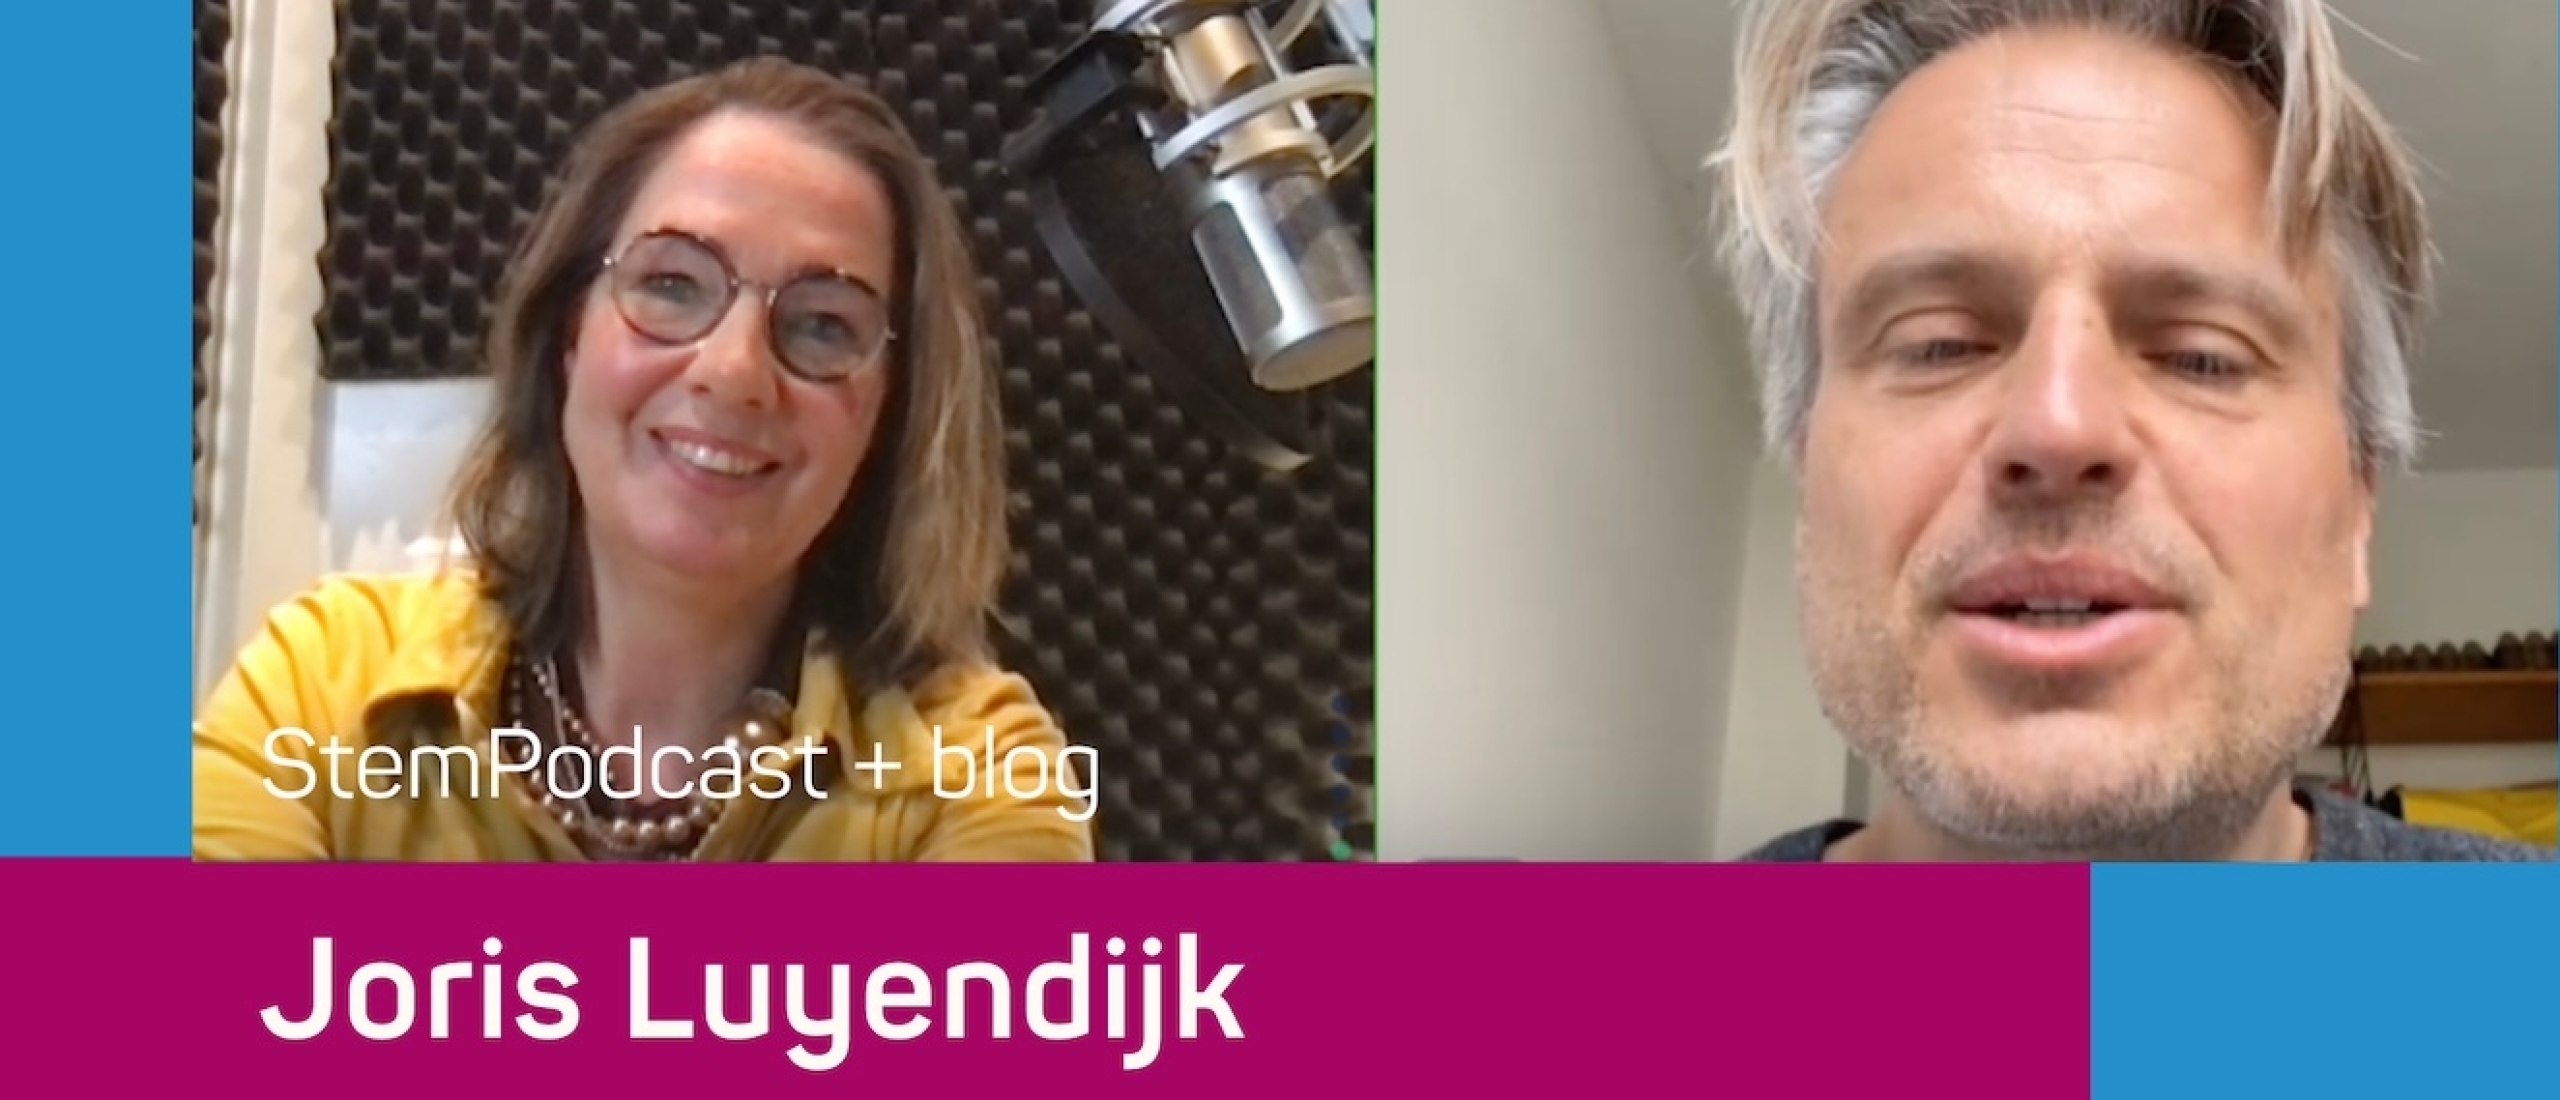 Publicist Joris Luyendijk in de StemPodcast: ‘Als een vrouw zo praat, denk je toch: er ís iets, je uit je woede niet’